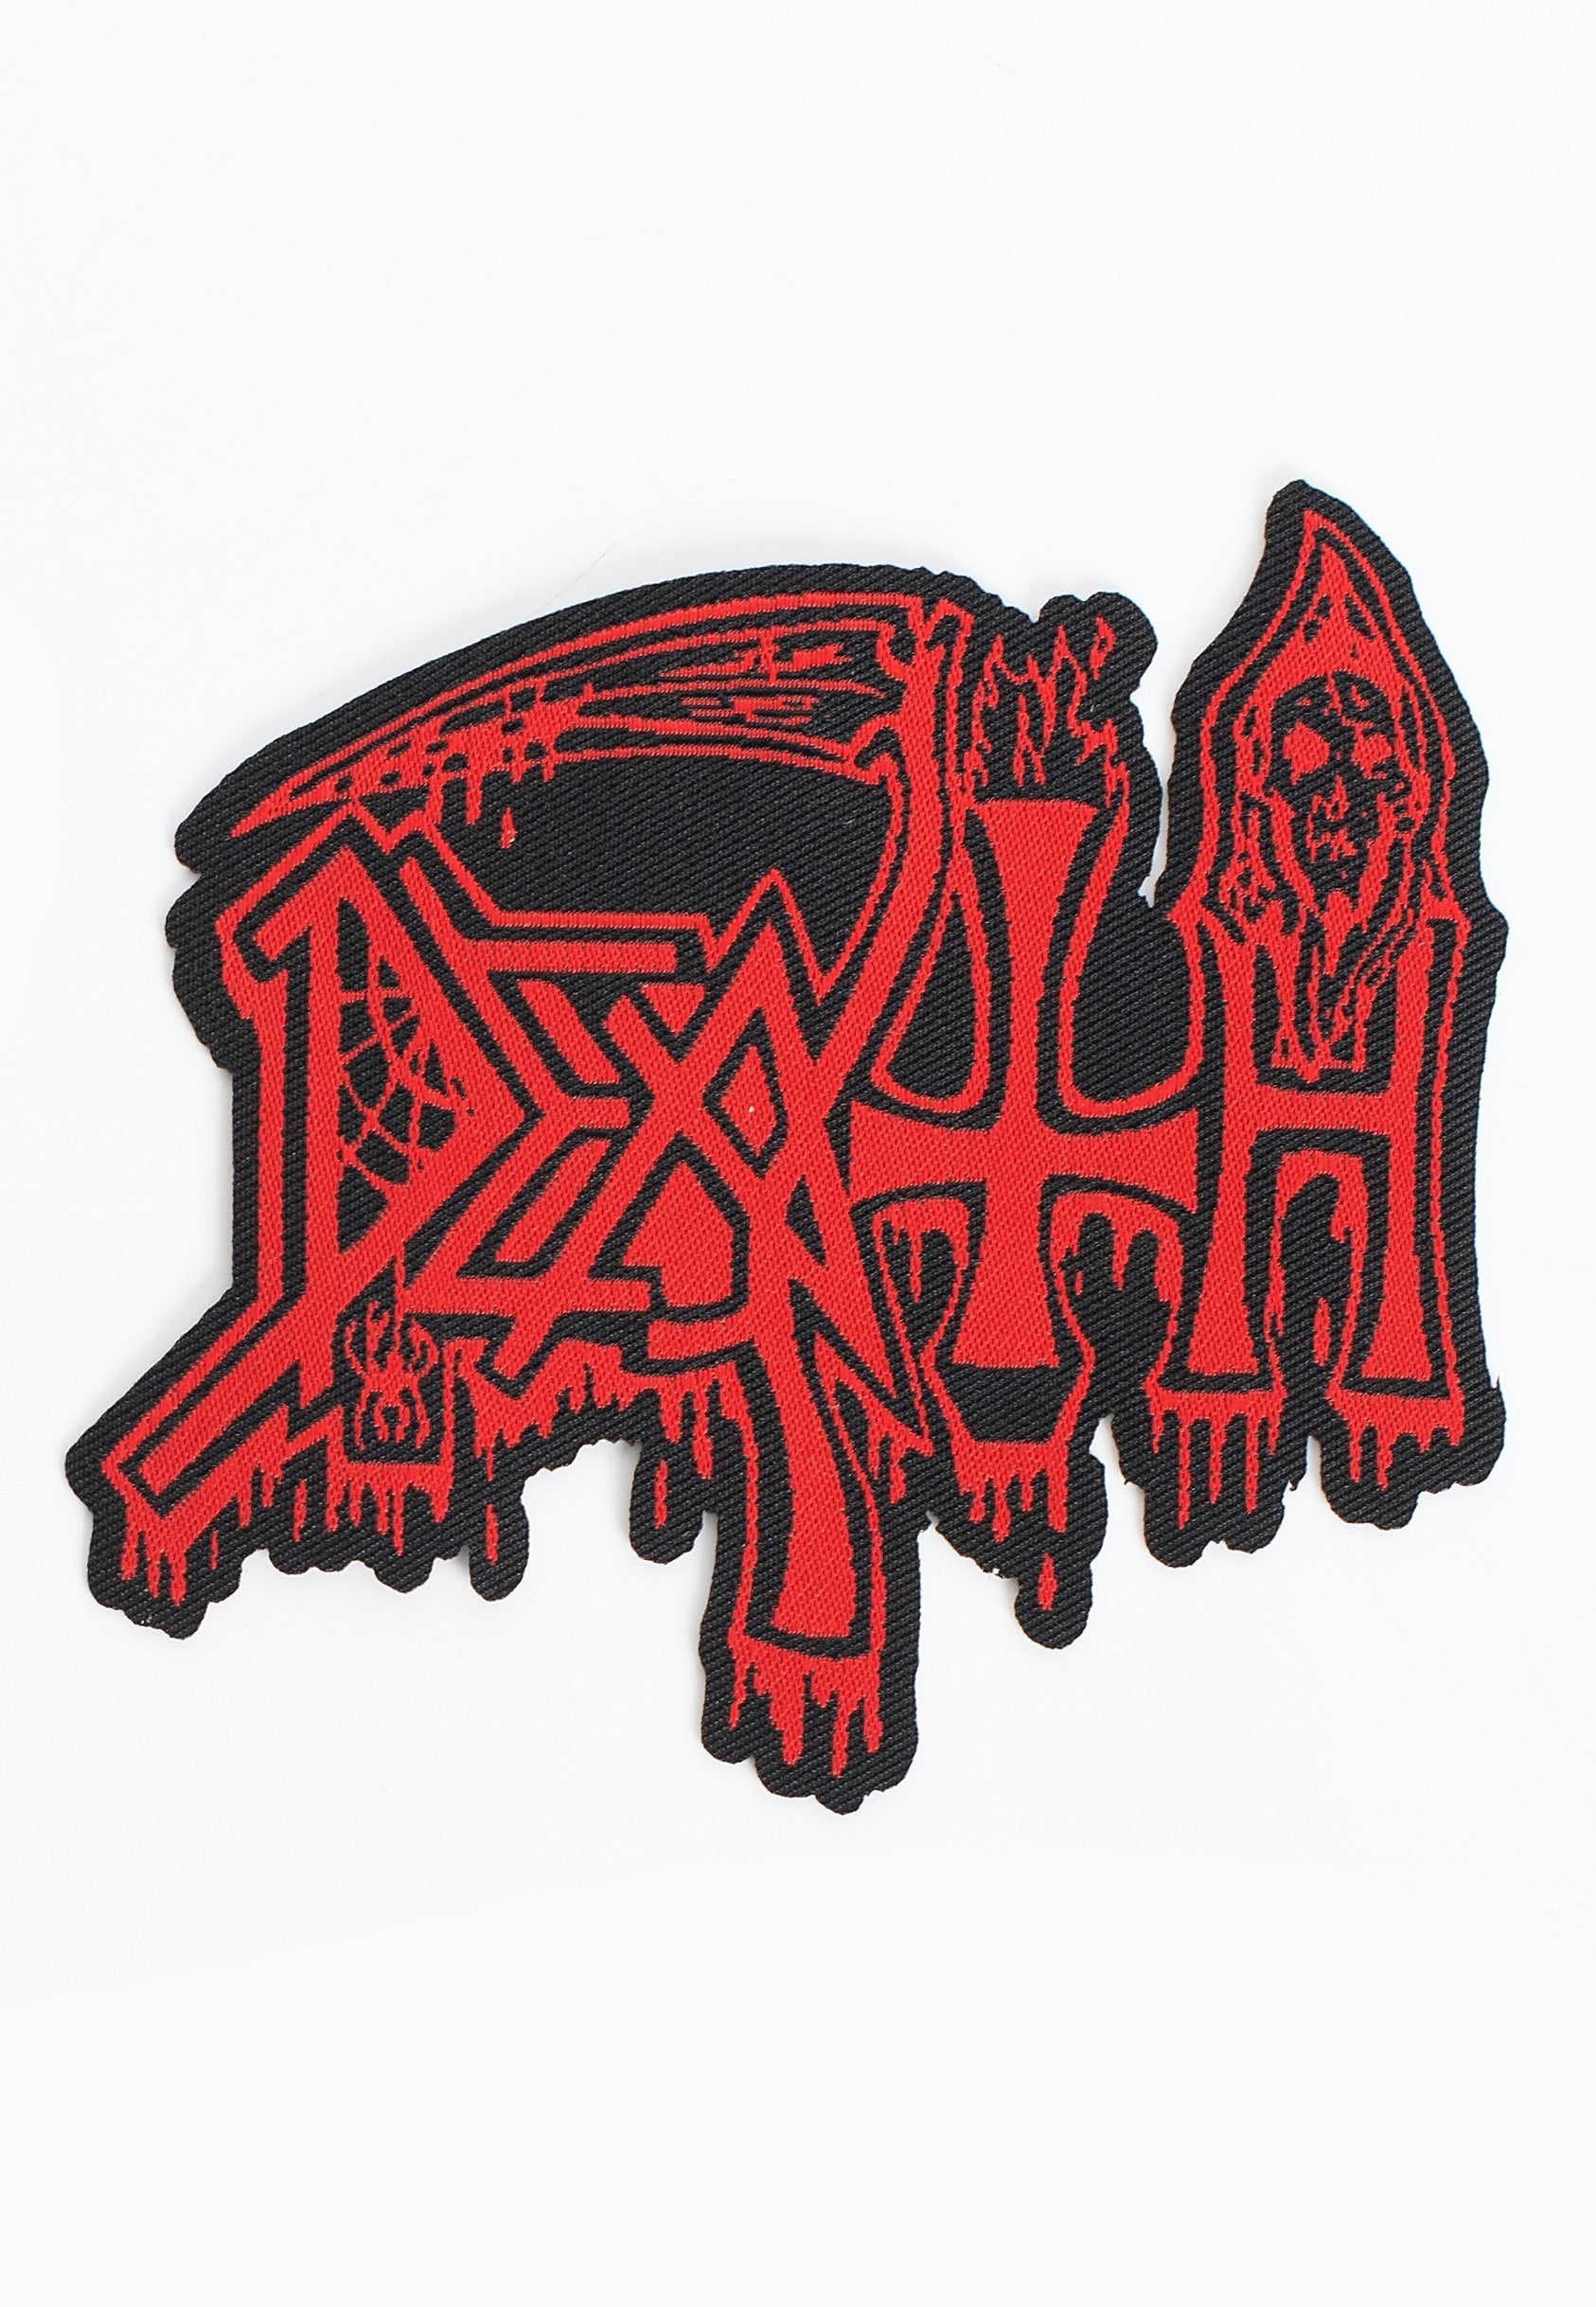 Death - Logo Cut Out - Patch